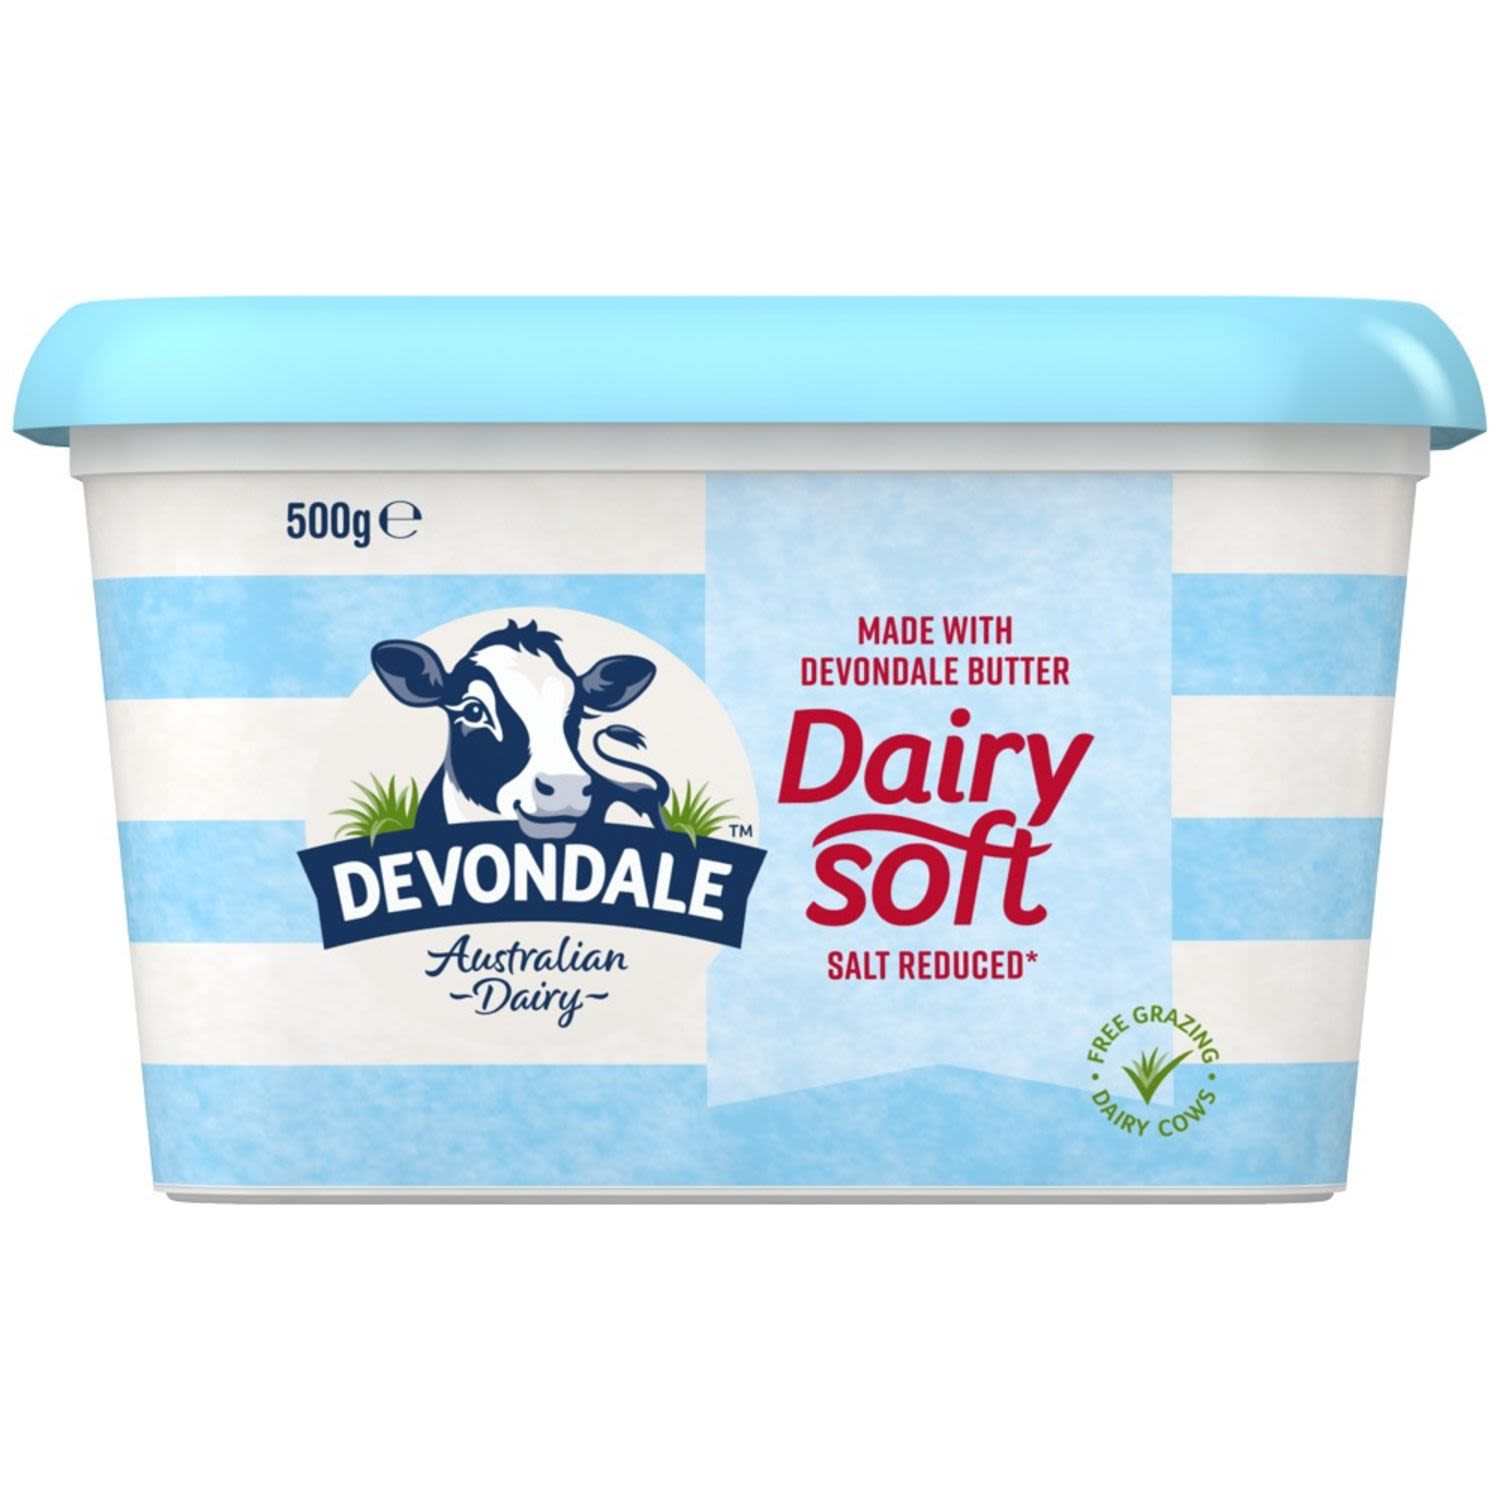 Devondale Dairy Soft Salt Reduced Butter Blend, 500 Gram